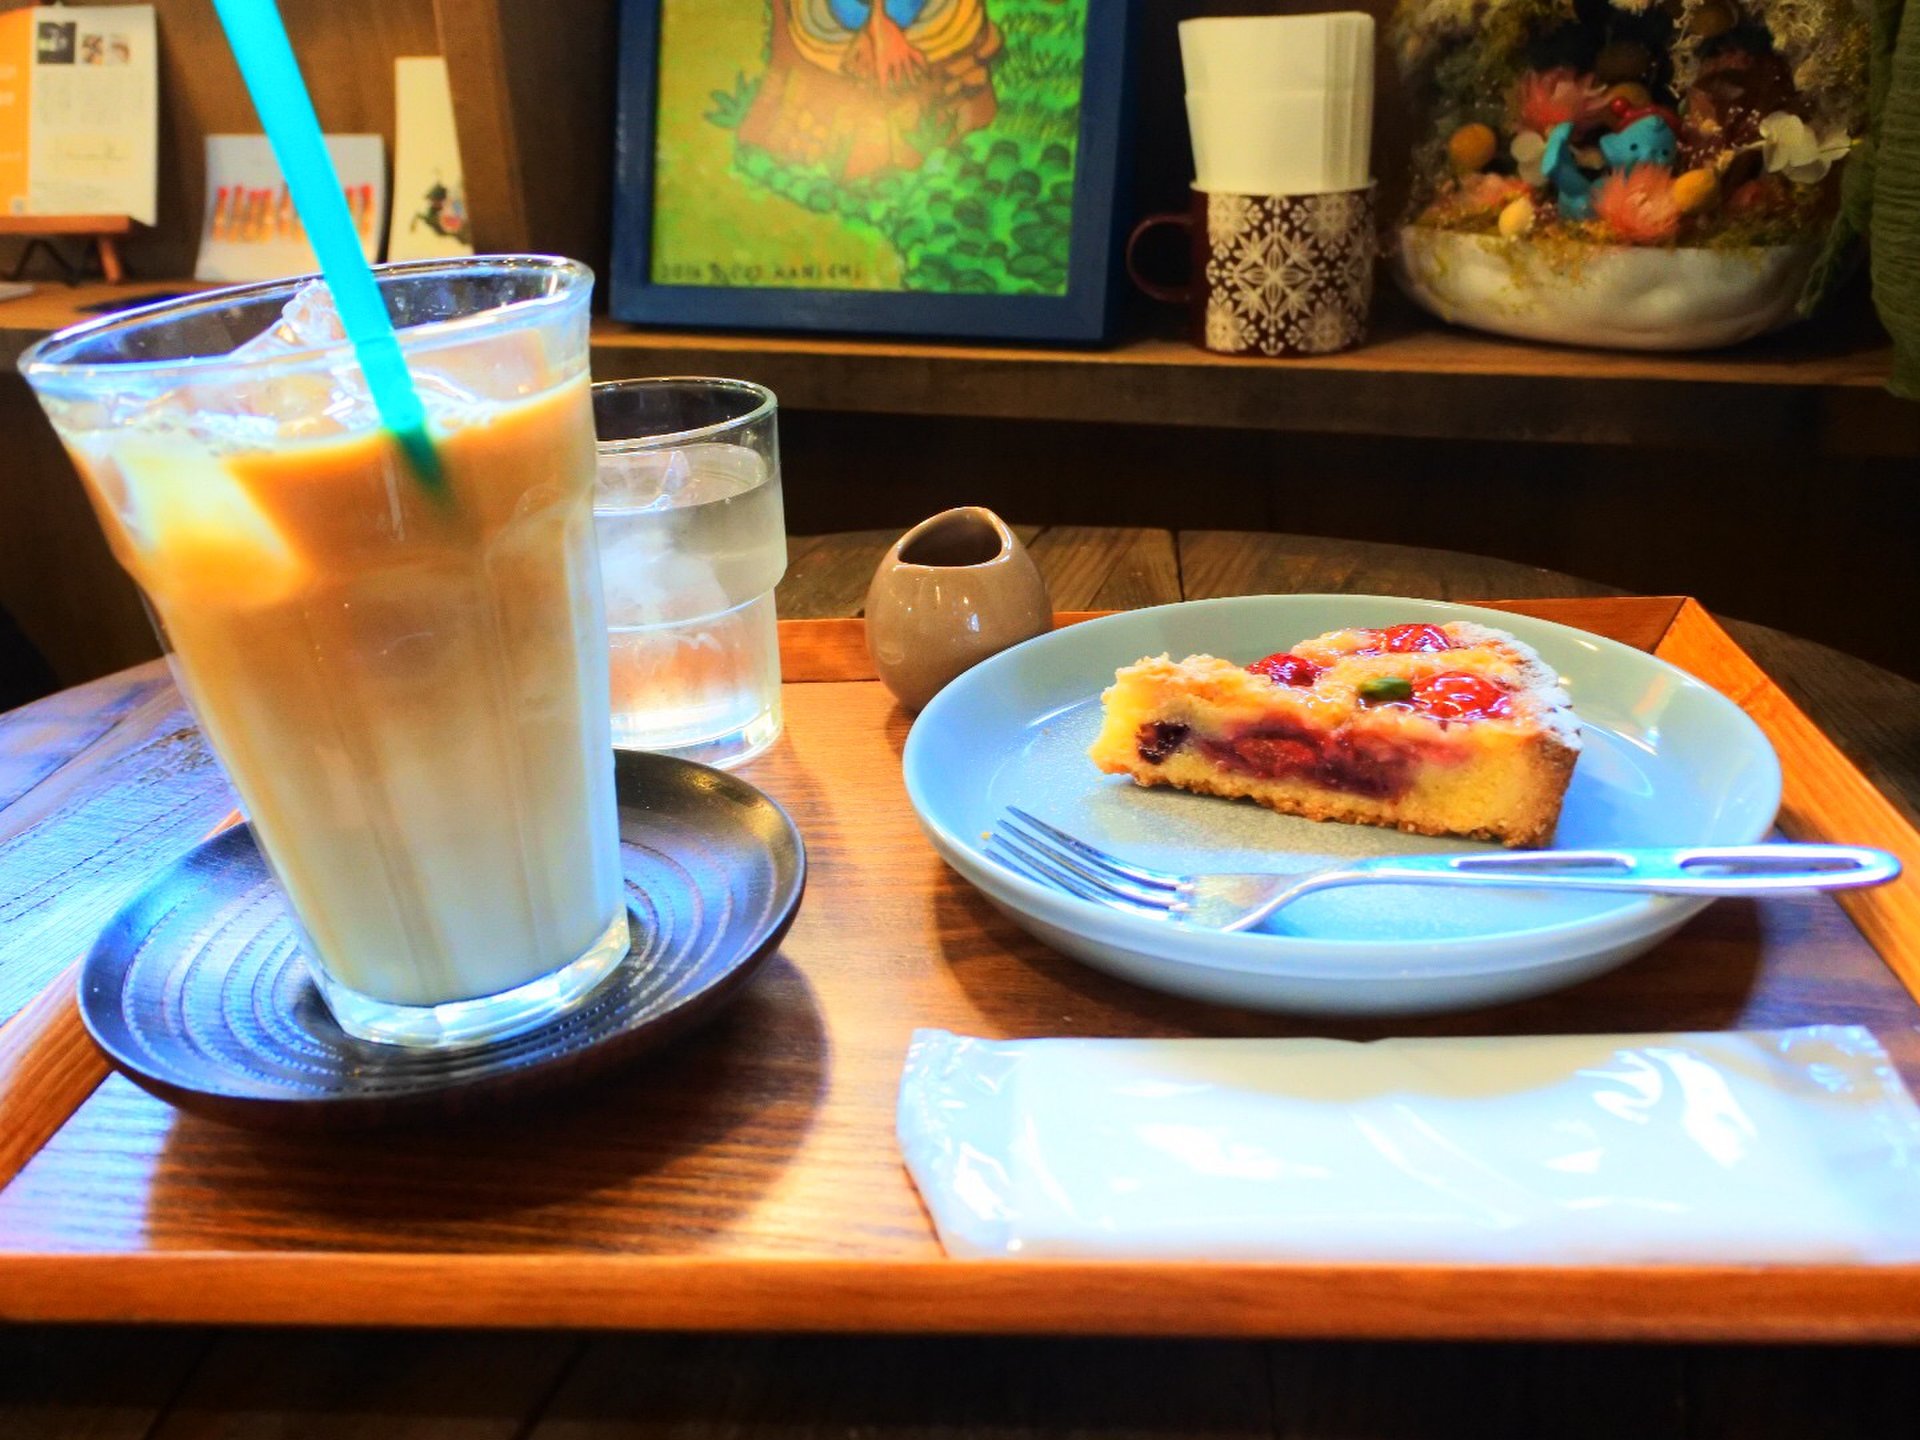 春を探して大阪ひとり旅 谷町九丁目にある人気カフェの苺ケーキと梅の名所 高津神社で春を先取りしてみた